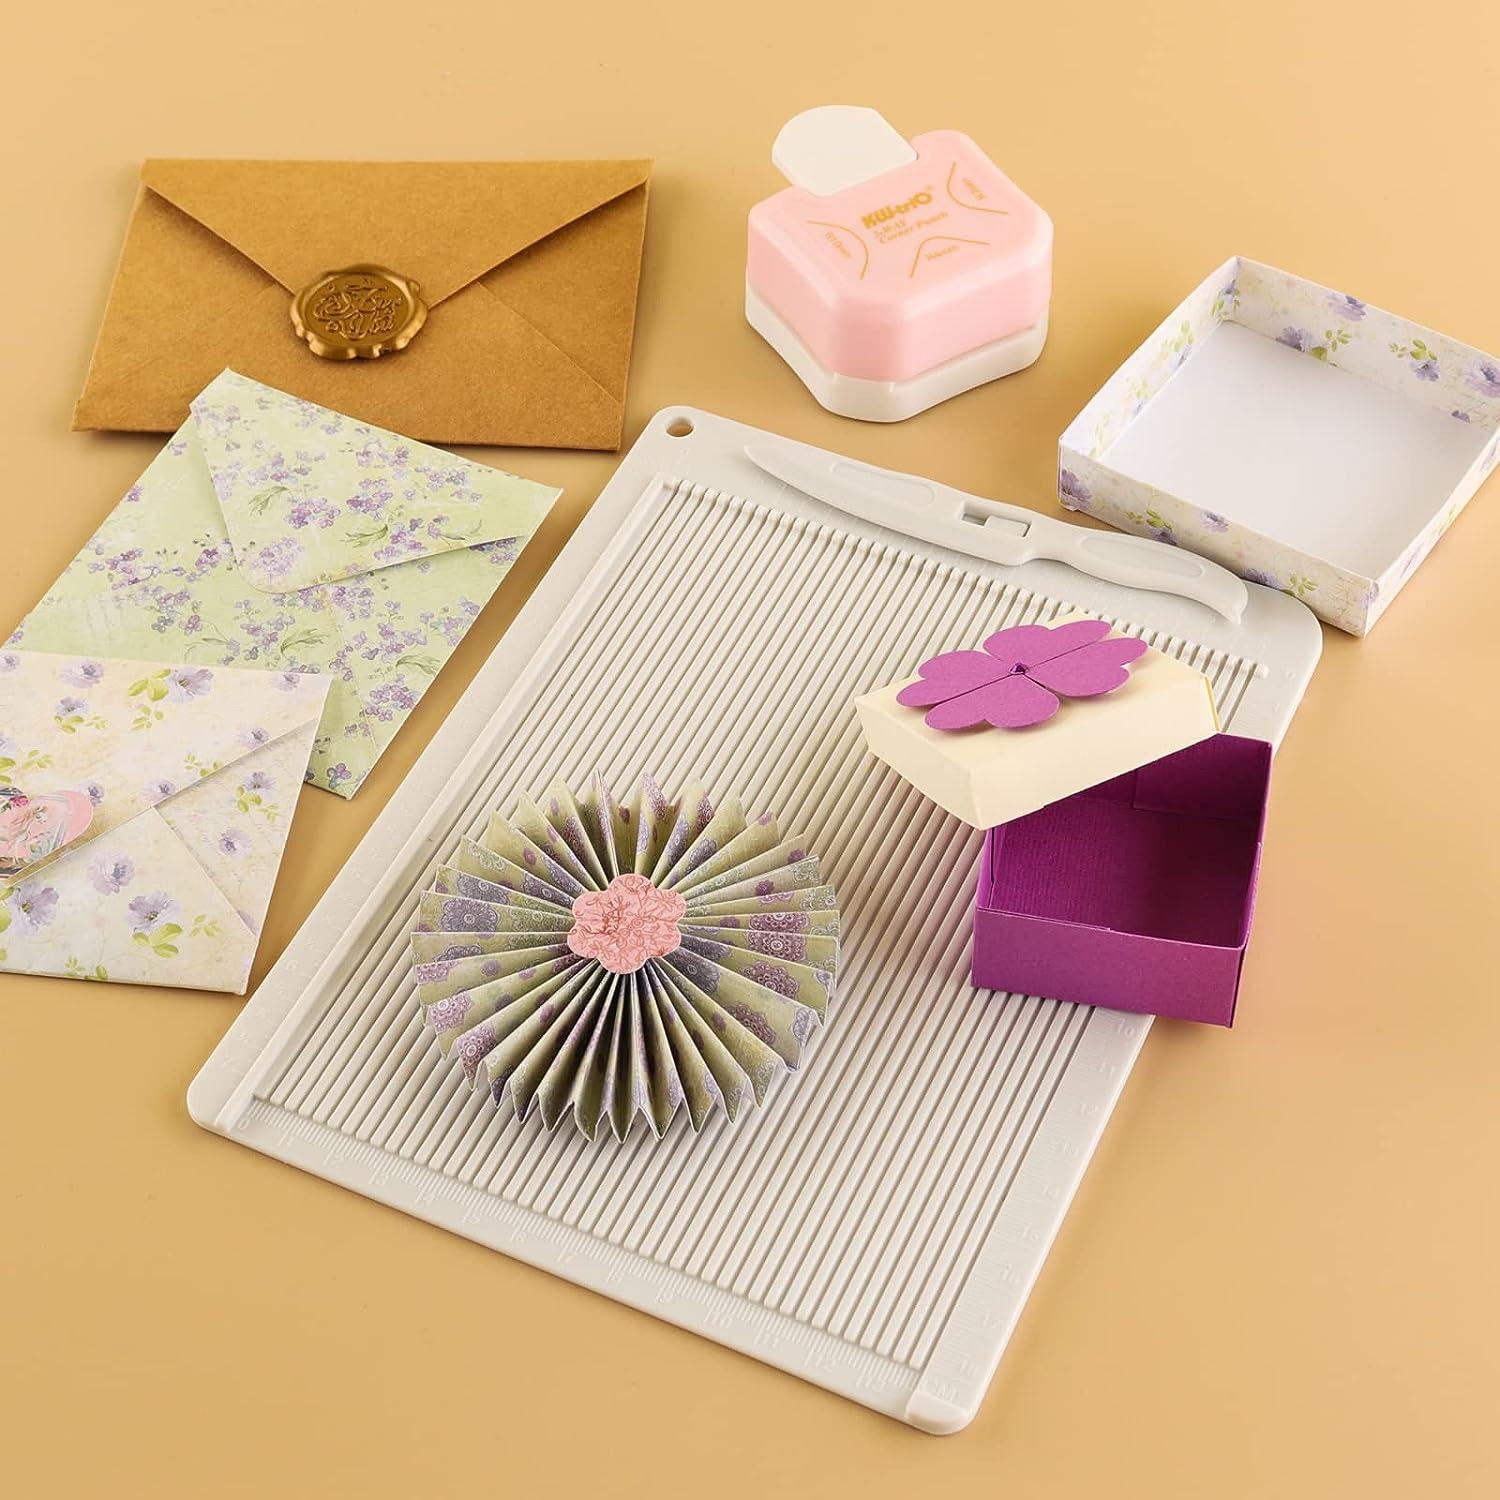 Score Board for Paper Crafts - Multicolor Mini Score Board for Custom  Envelopes